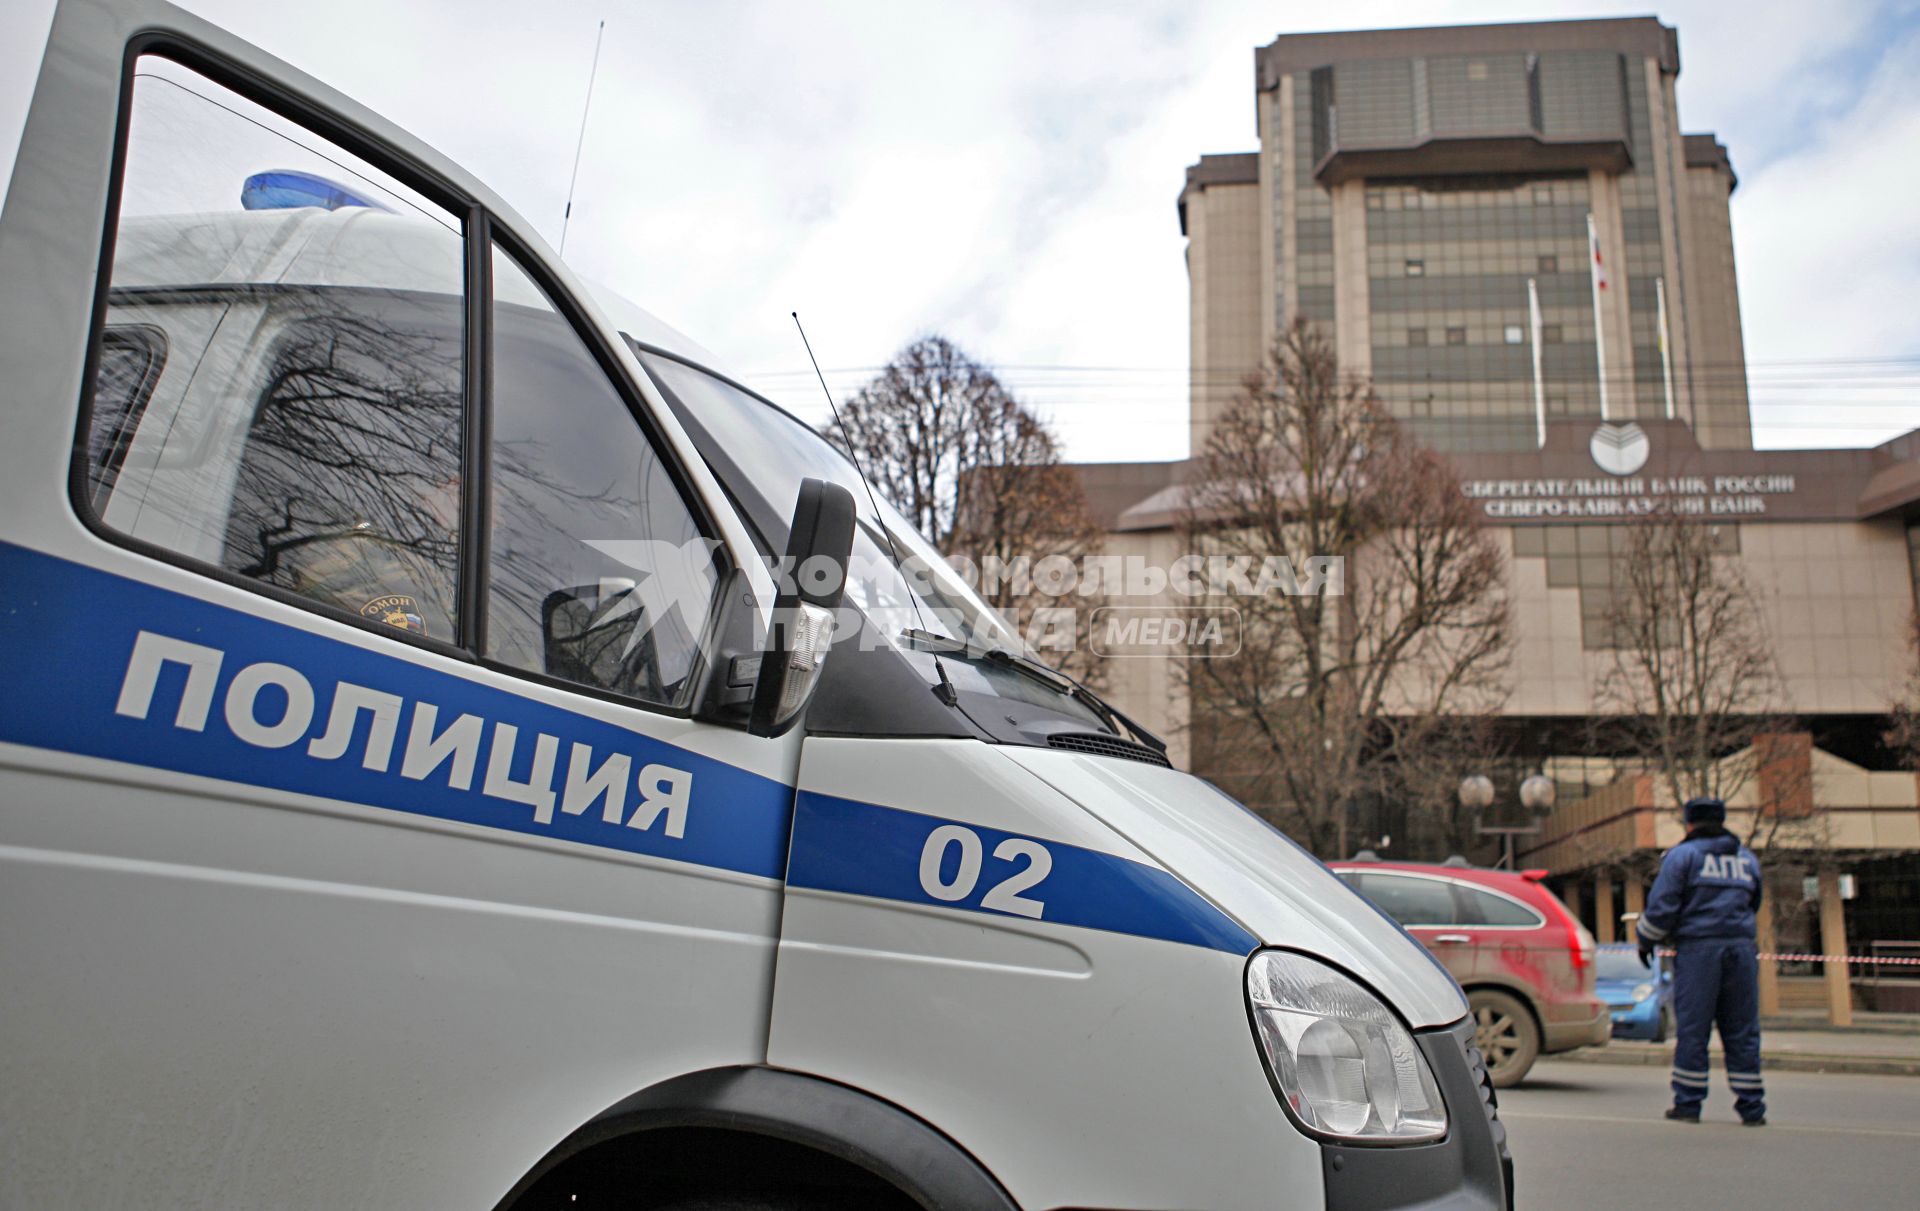 Угроза взрыва в ставропольском банке. На снимке: работа полиции и ДПС на месте угрозы.